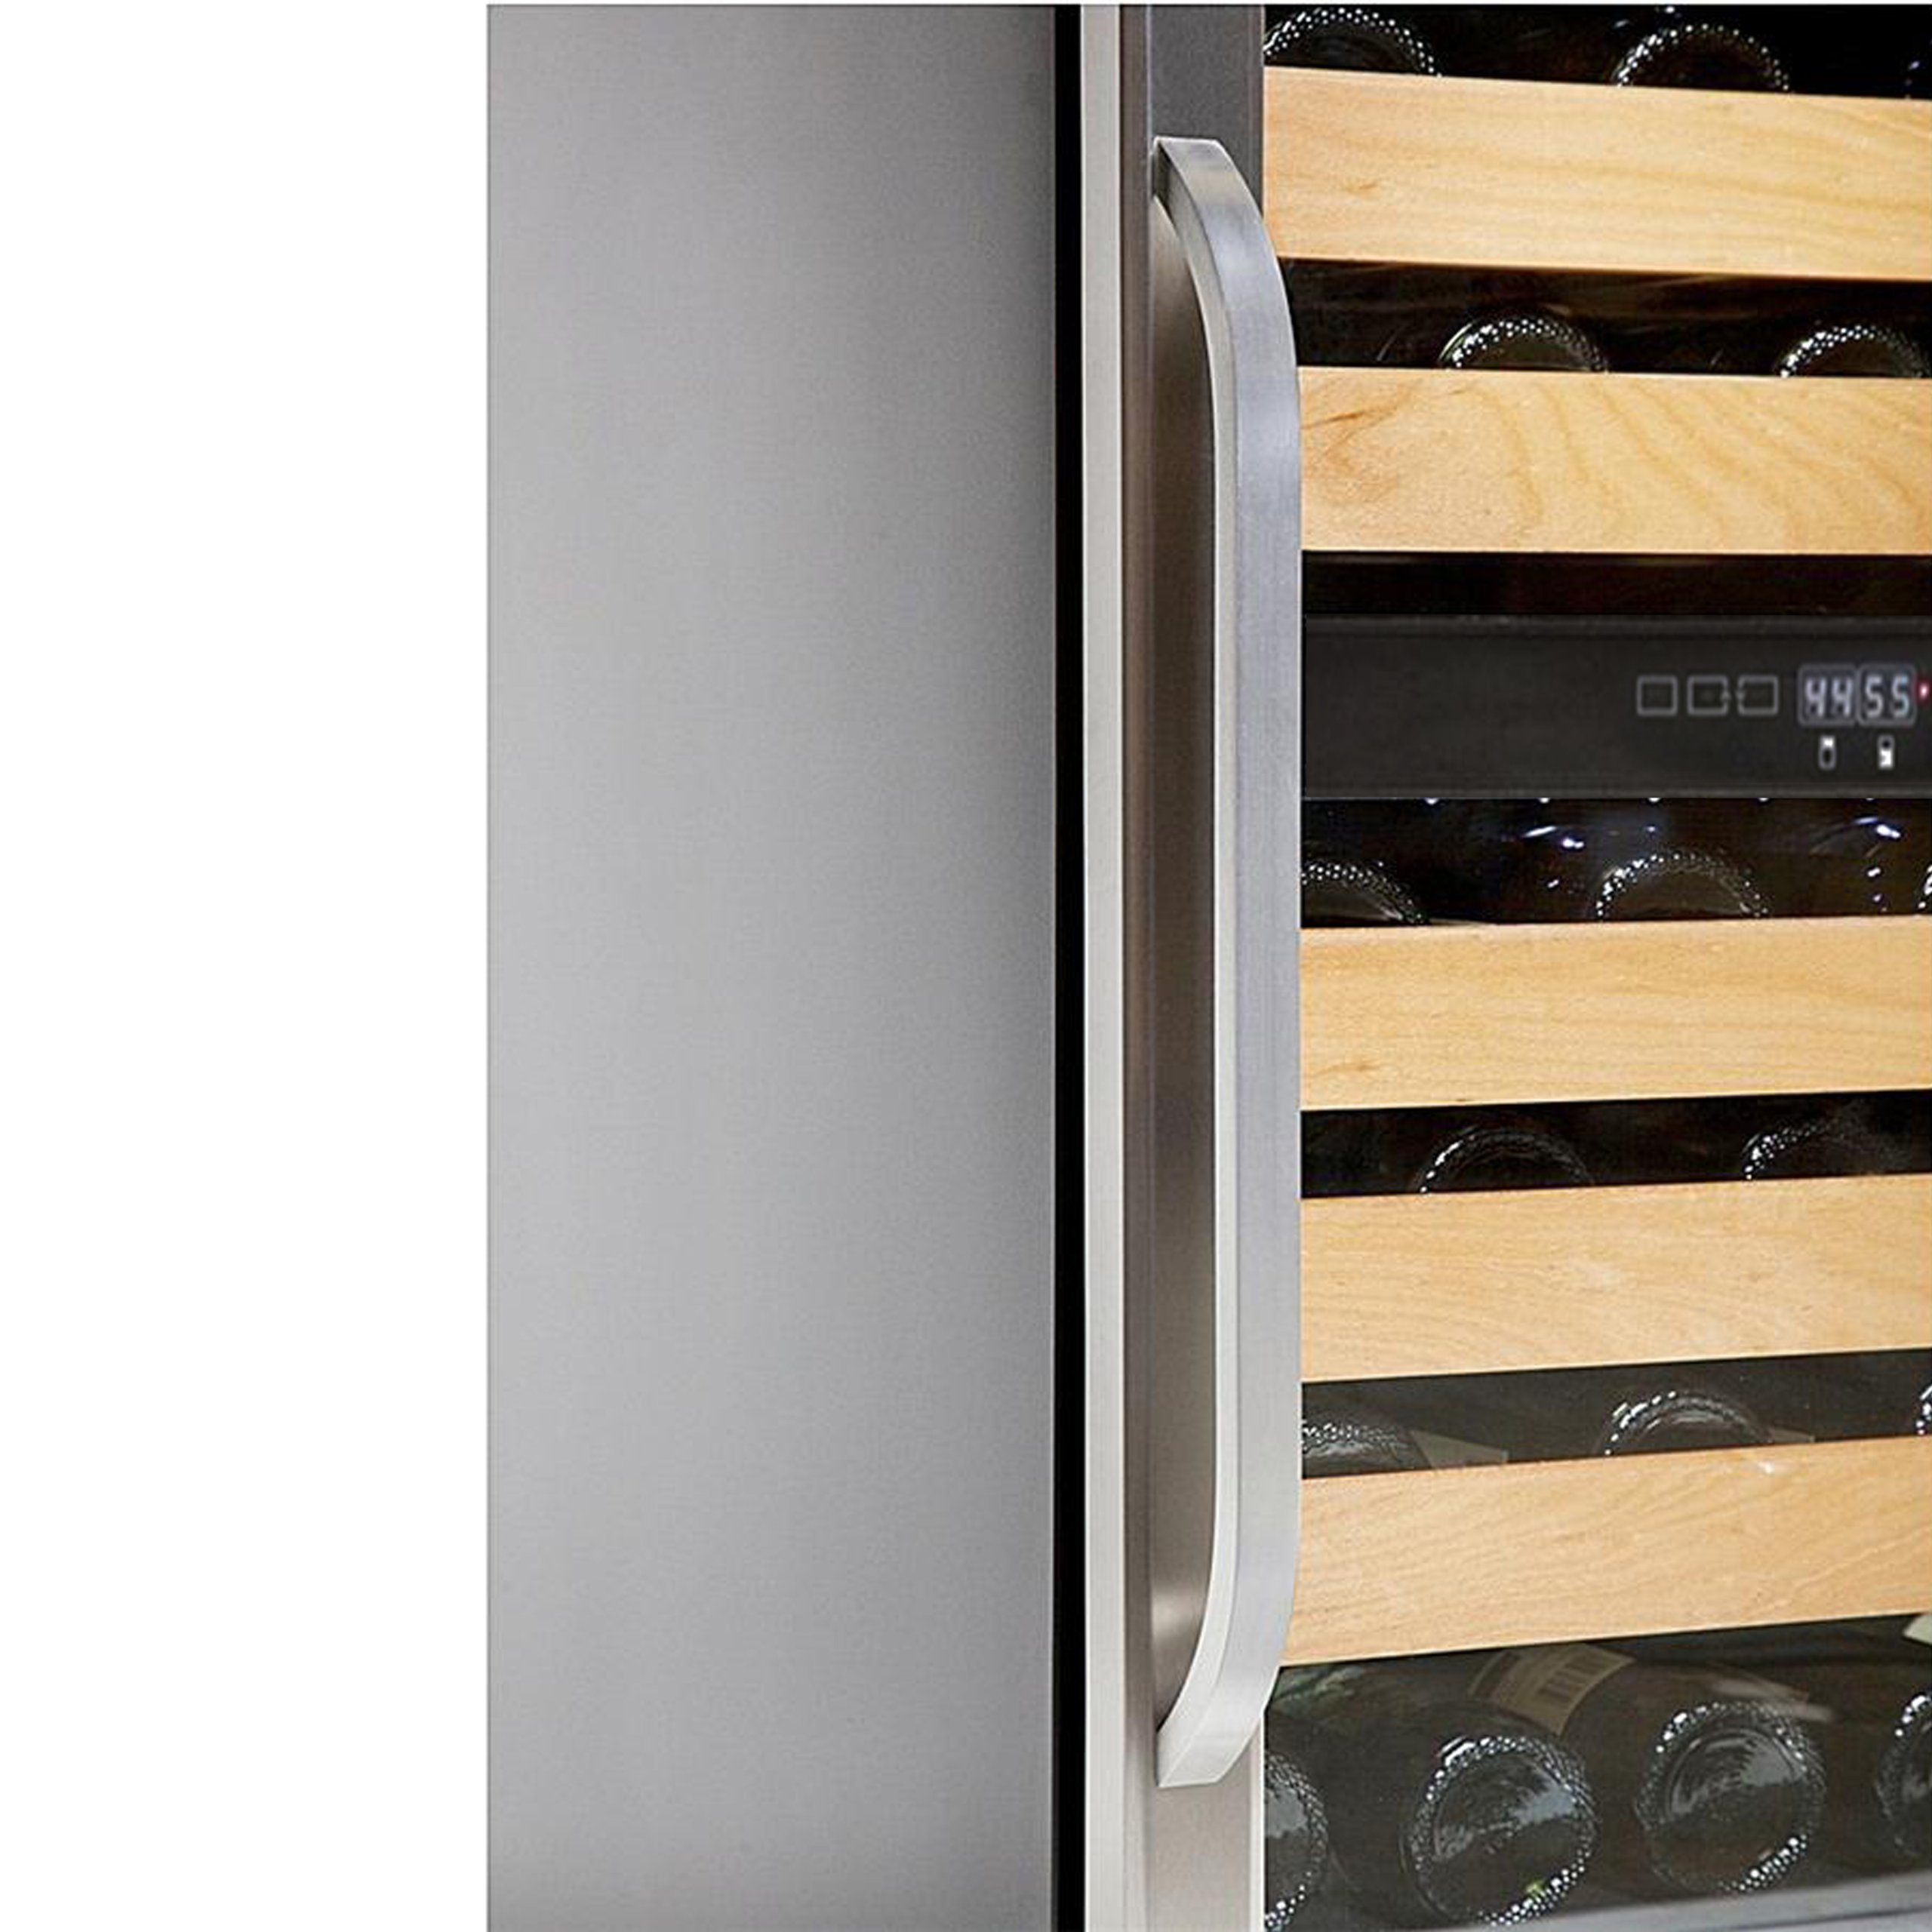 Whynter BWR-461DZ Dual Zone Built-In Wine Refrigerator, 46-Bottle